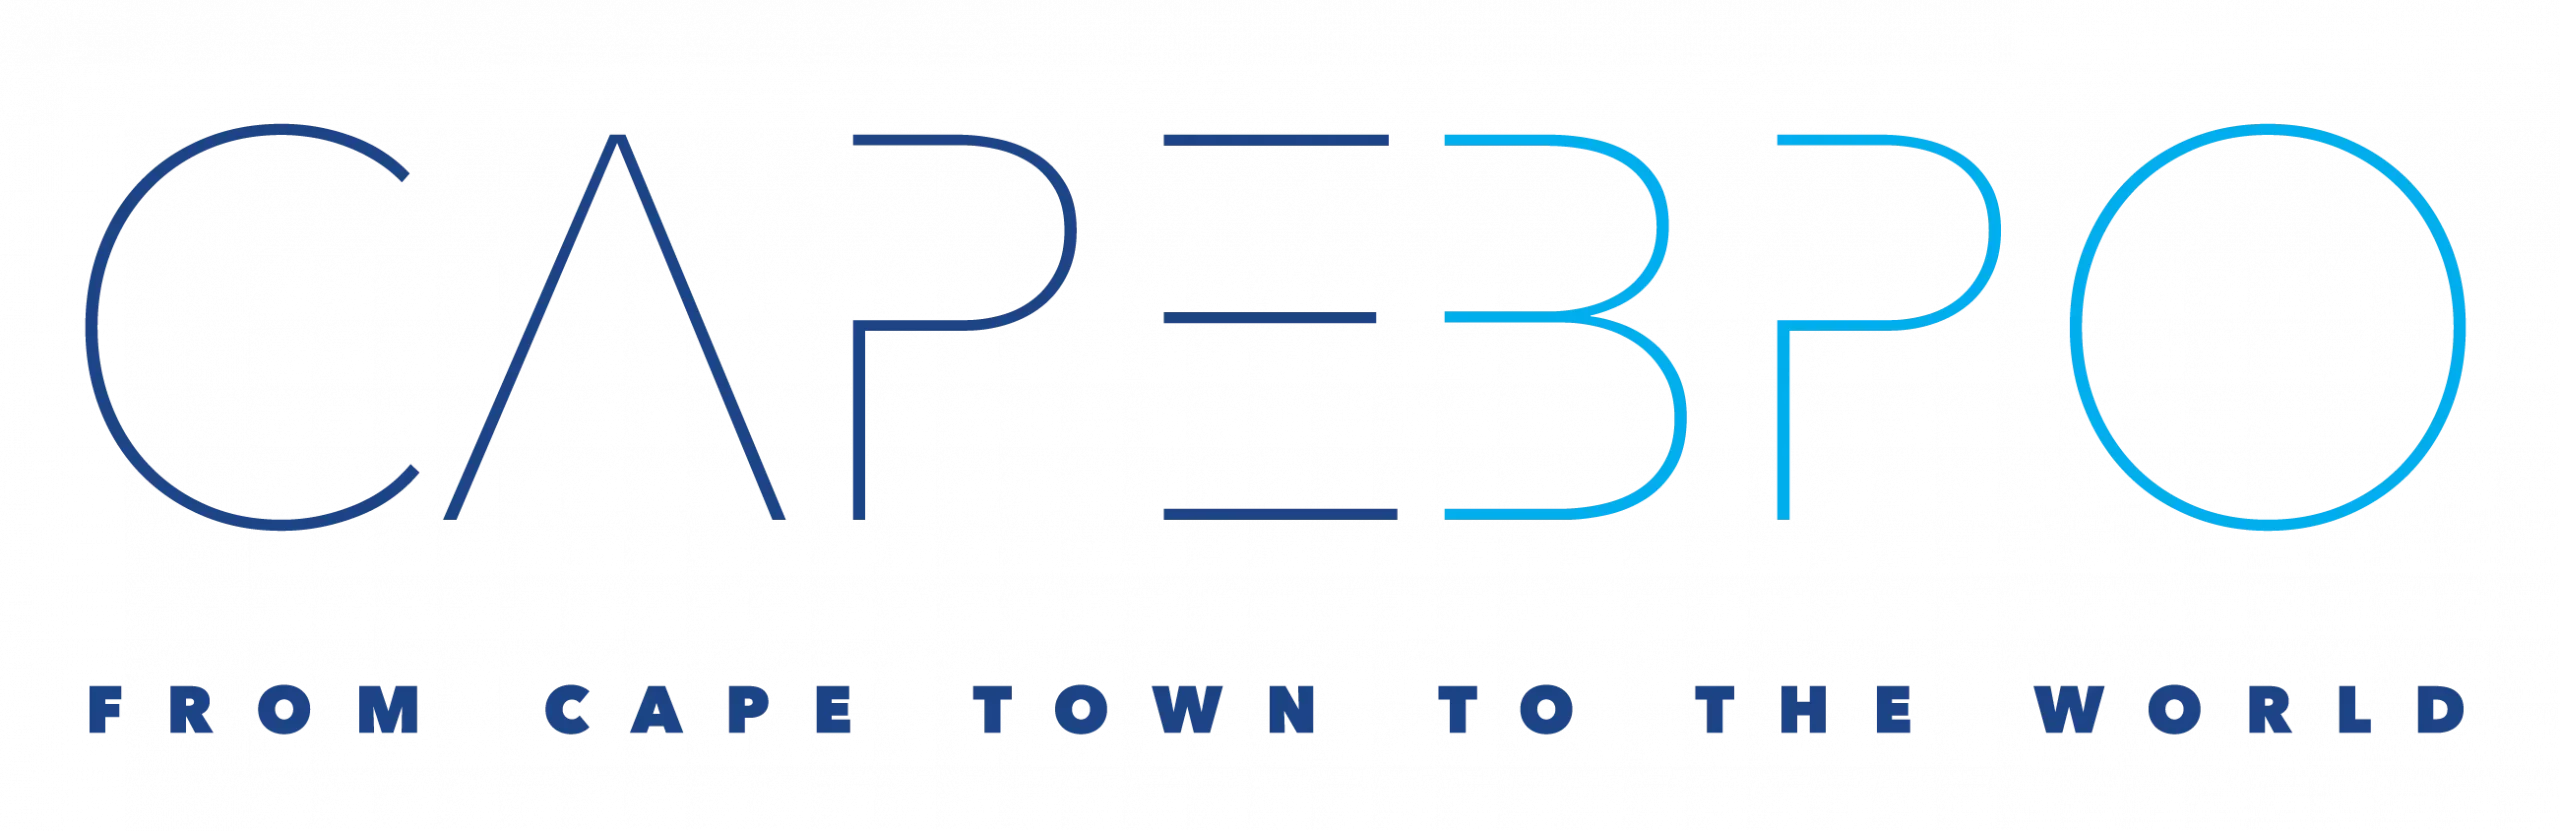 Cape BPO logo